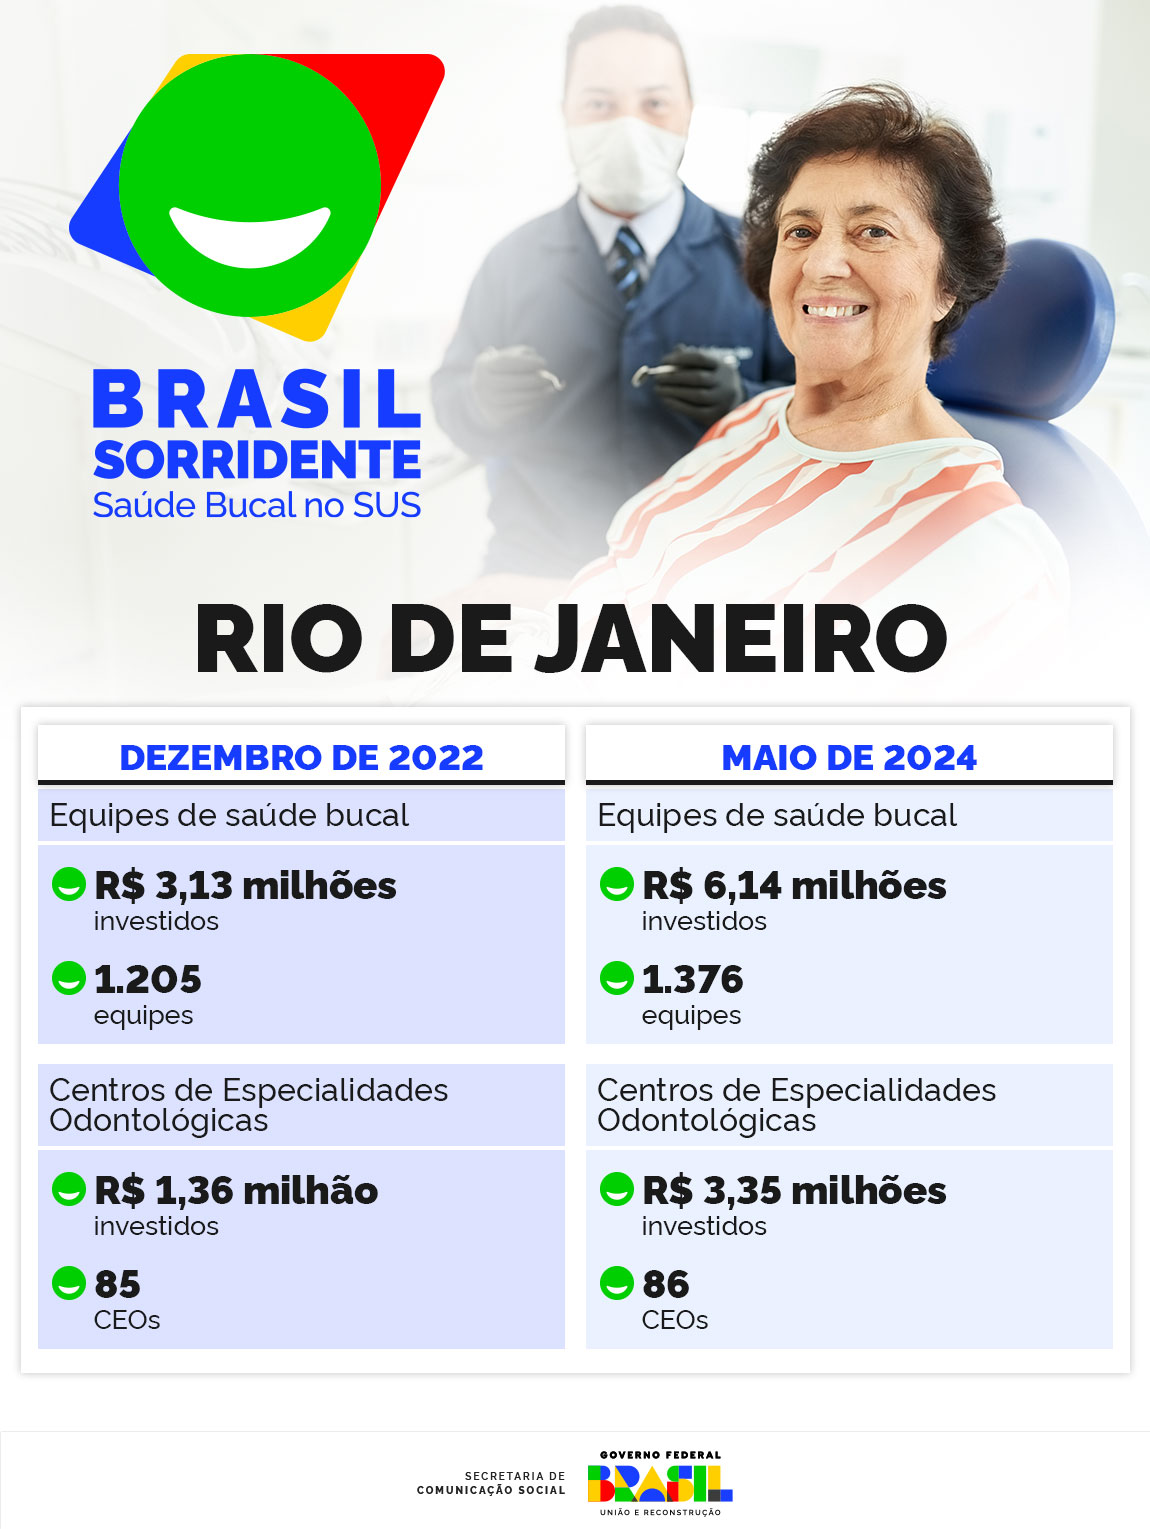 0729_RJ_Info_Brasil_Sorridente.jpg